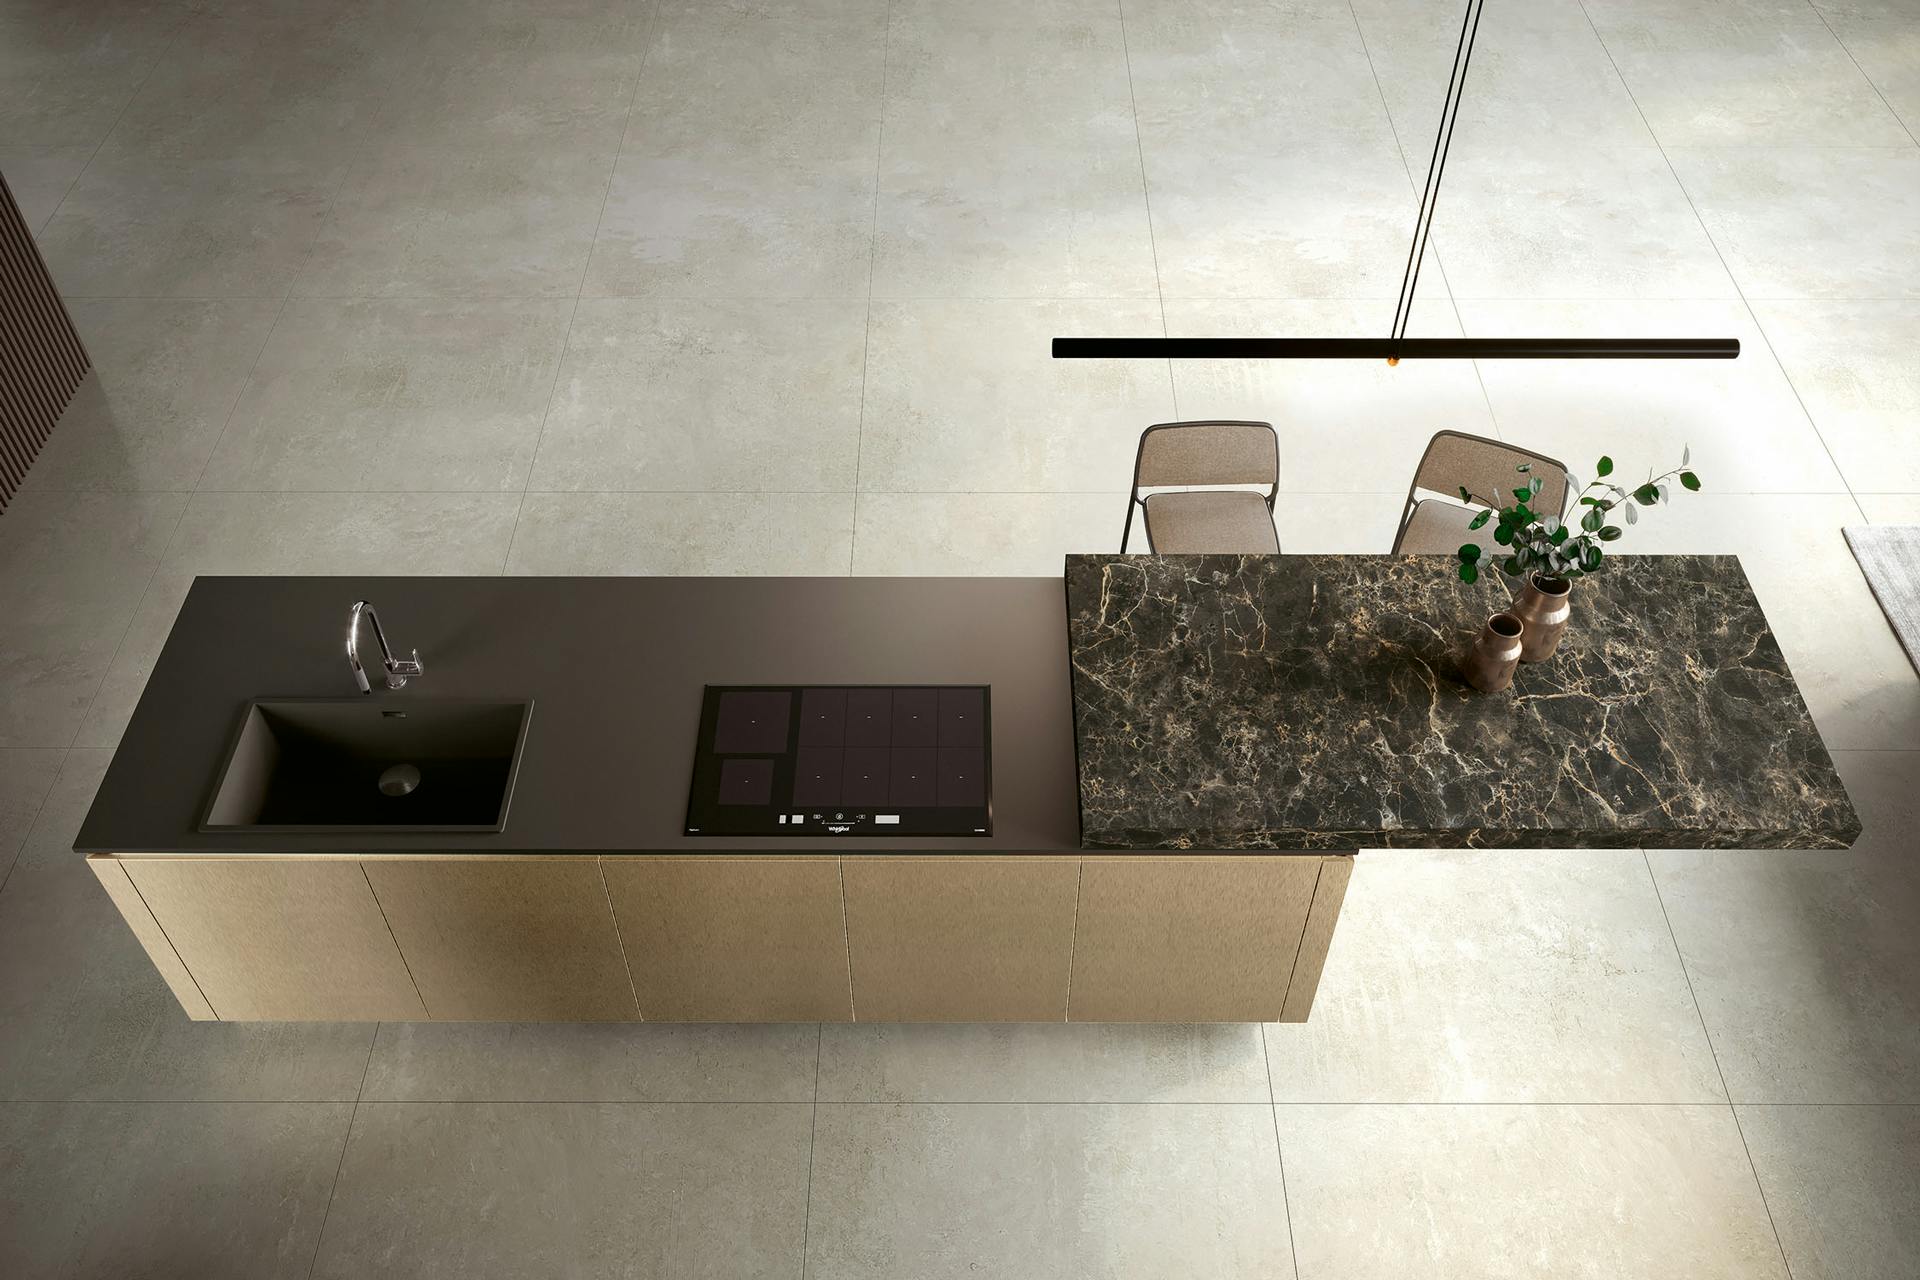 Modula, Febal Casa kitchens, Mona™ Design Studio